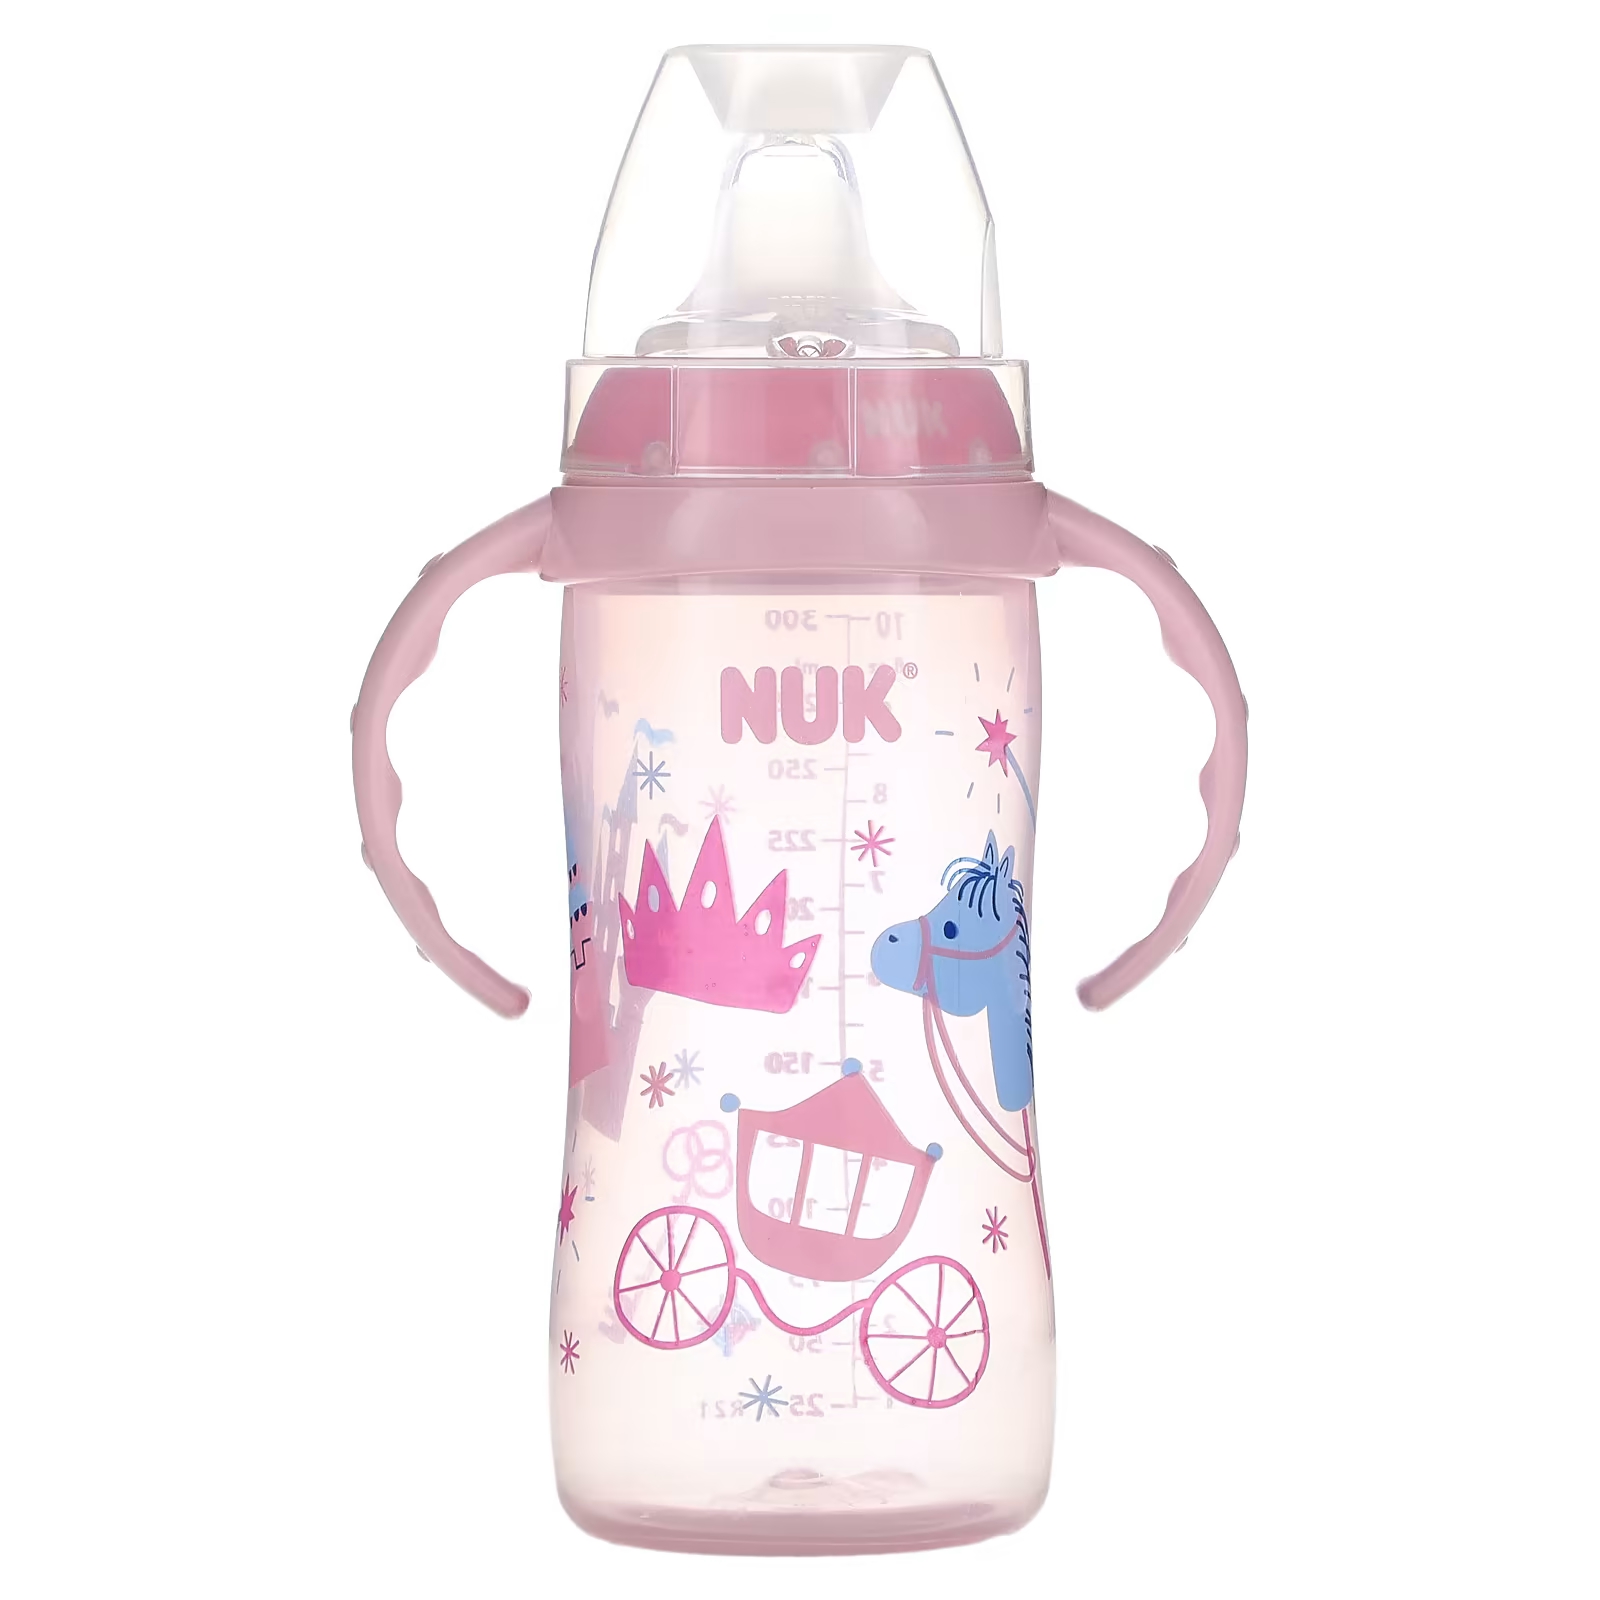 Бутылочка NUK от 8 месяцев розовая 1 упаковка, 300мл nuk large learner cup для детей от 8 месяцев розовый 1 упаковка 300 мл 10 унций